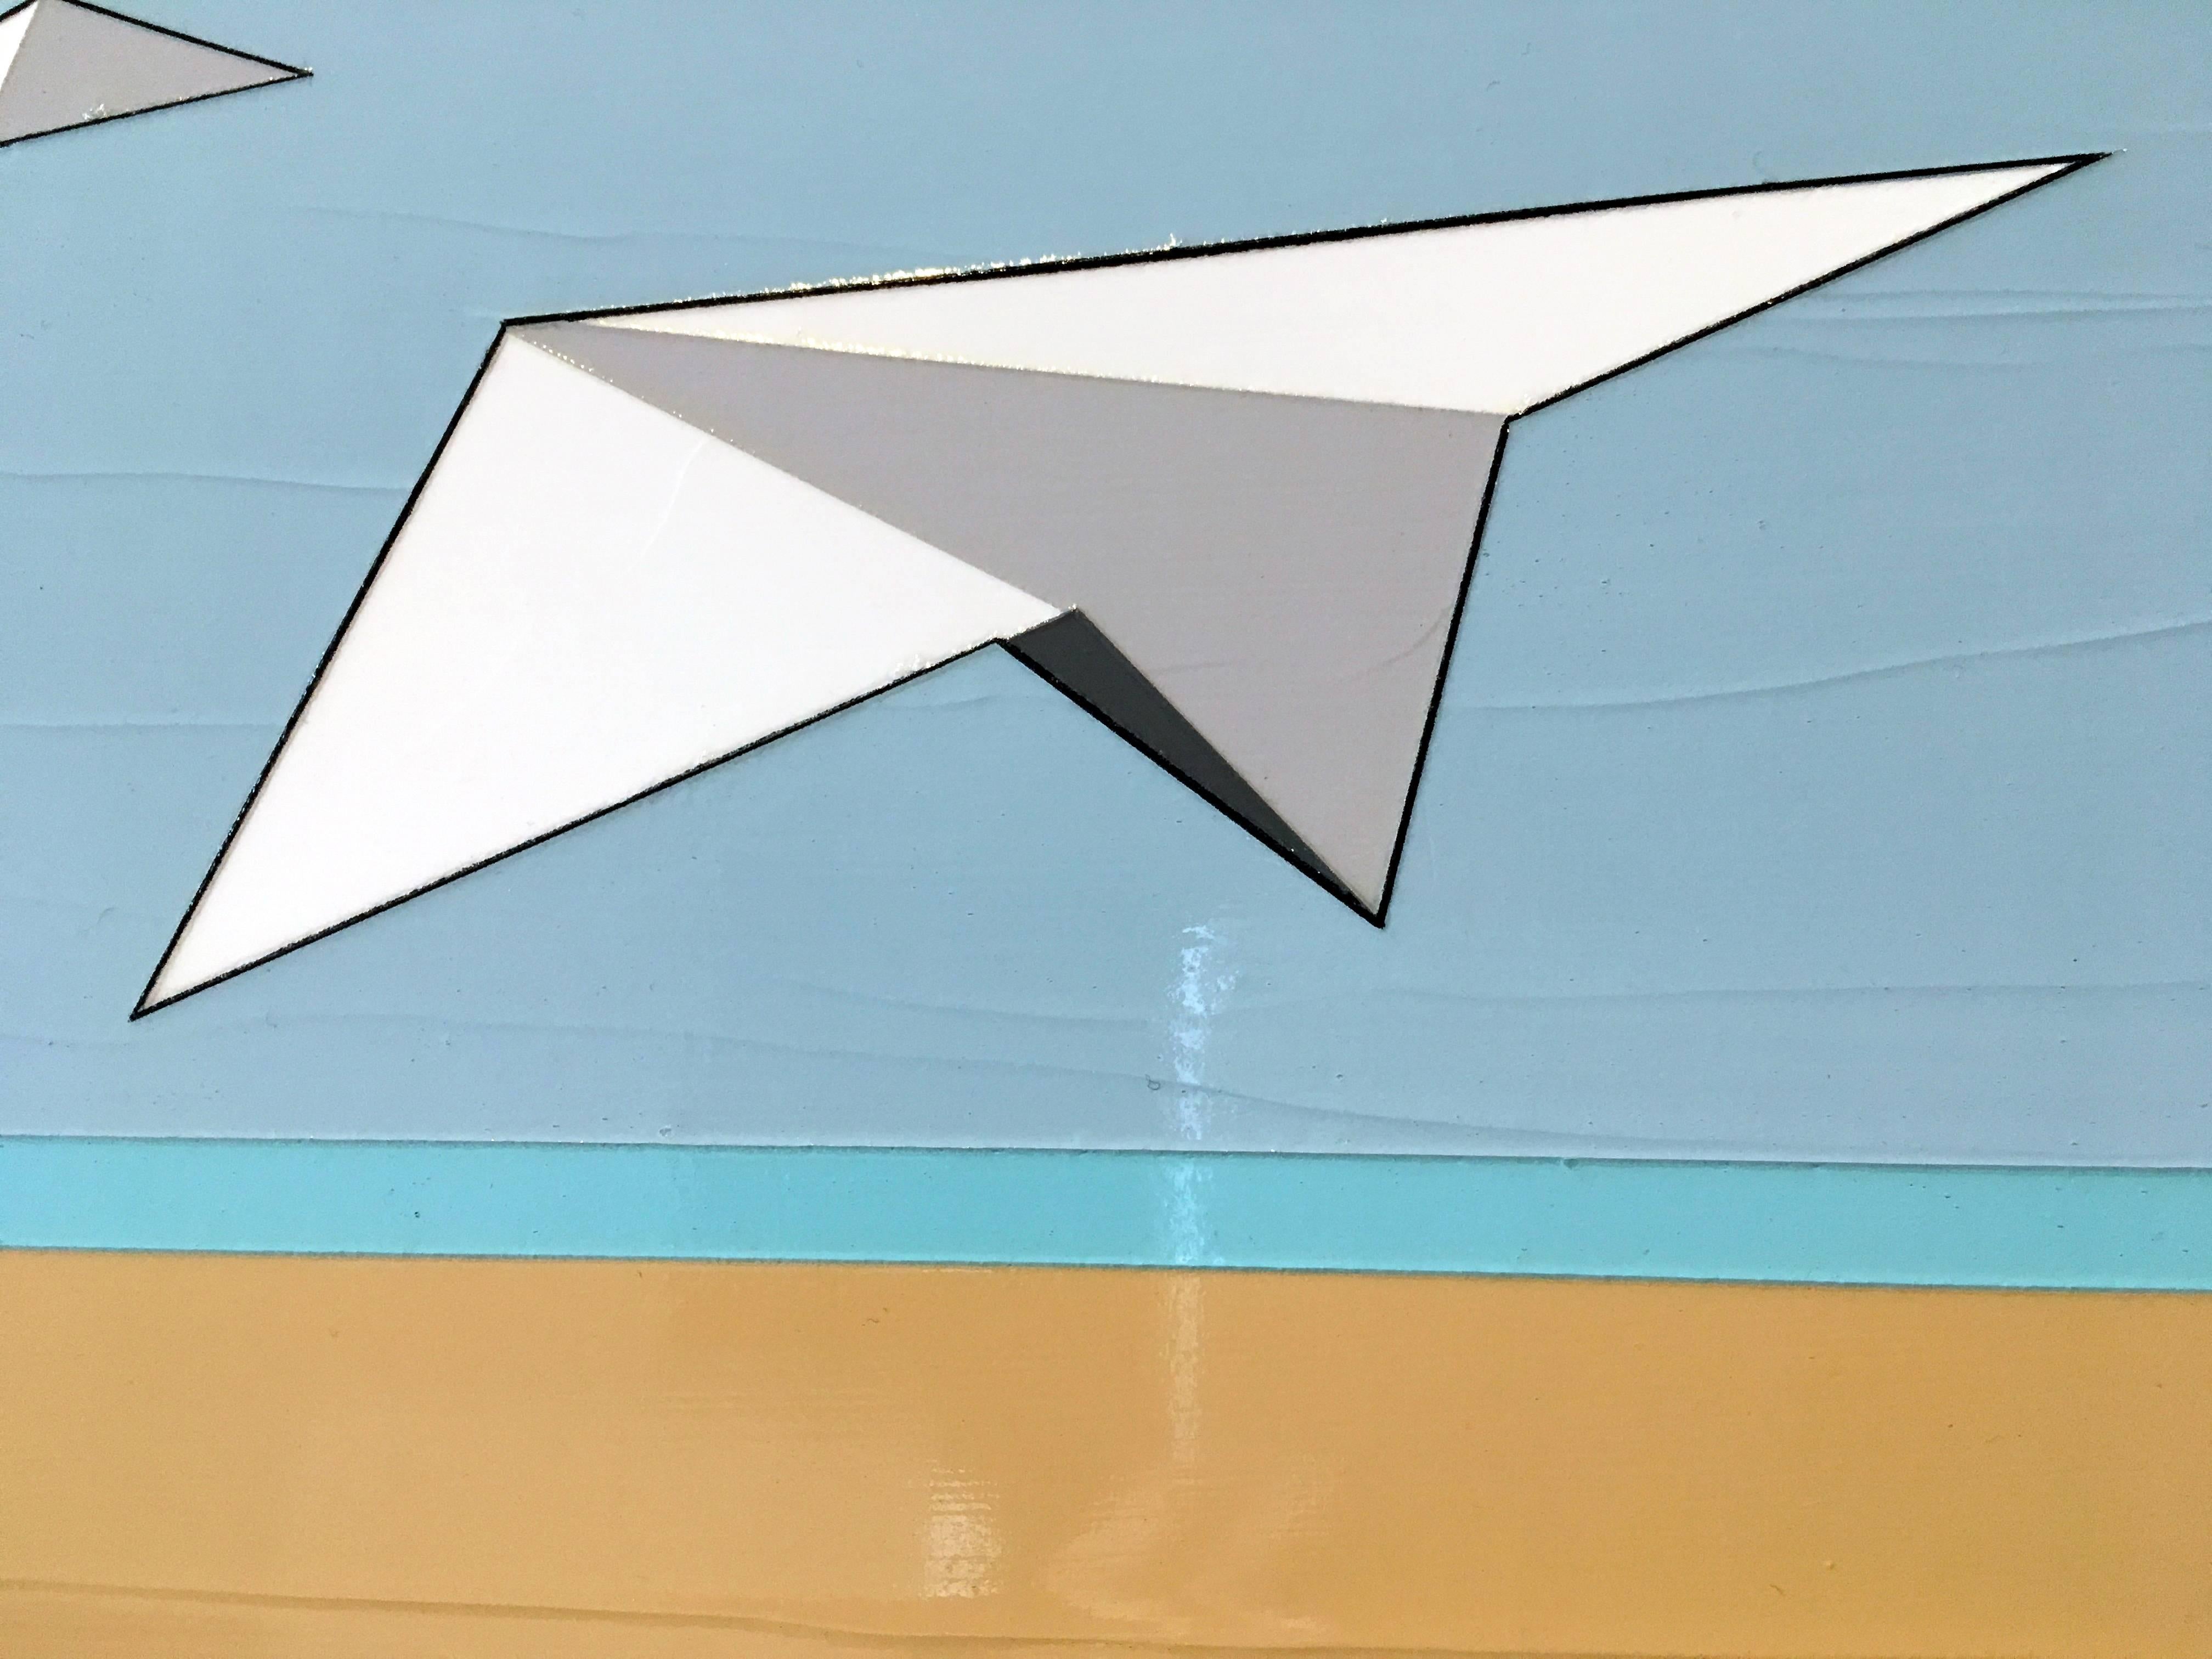 Away We Go ist ein dick strukturiertes Öl- und Acrylgemälde mit drei Papierflugzeugen, die wie Vögel aufsteigen.  Es stammt von Jason Wright, einem Künstler aus Hawaii.

Jason Wright wurde in den Vereinigten Staaten geboren (1975).  Er studierte